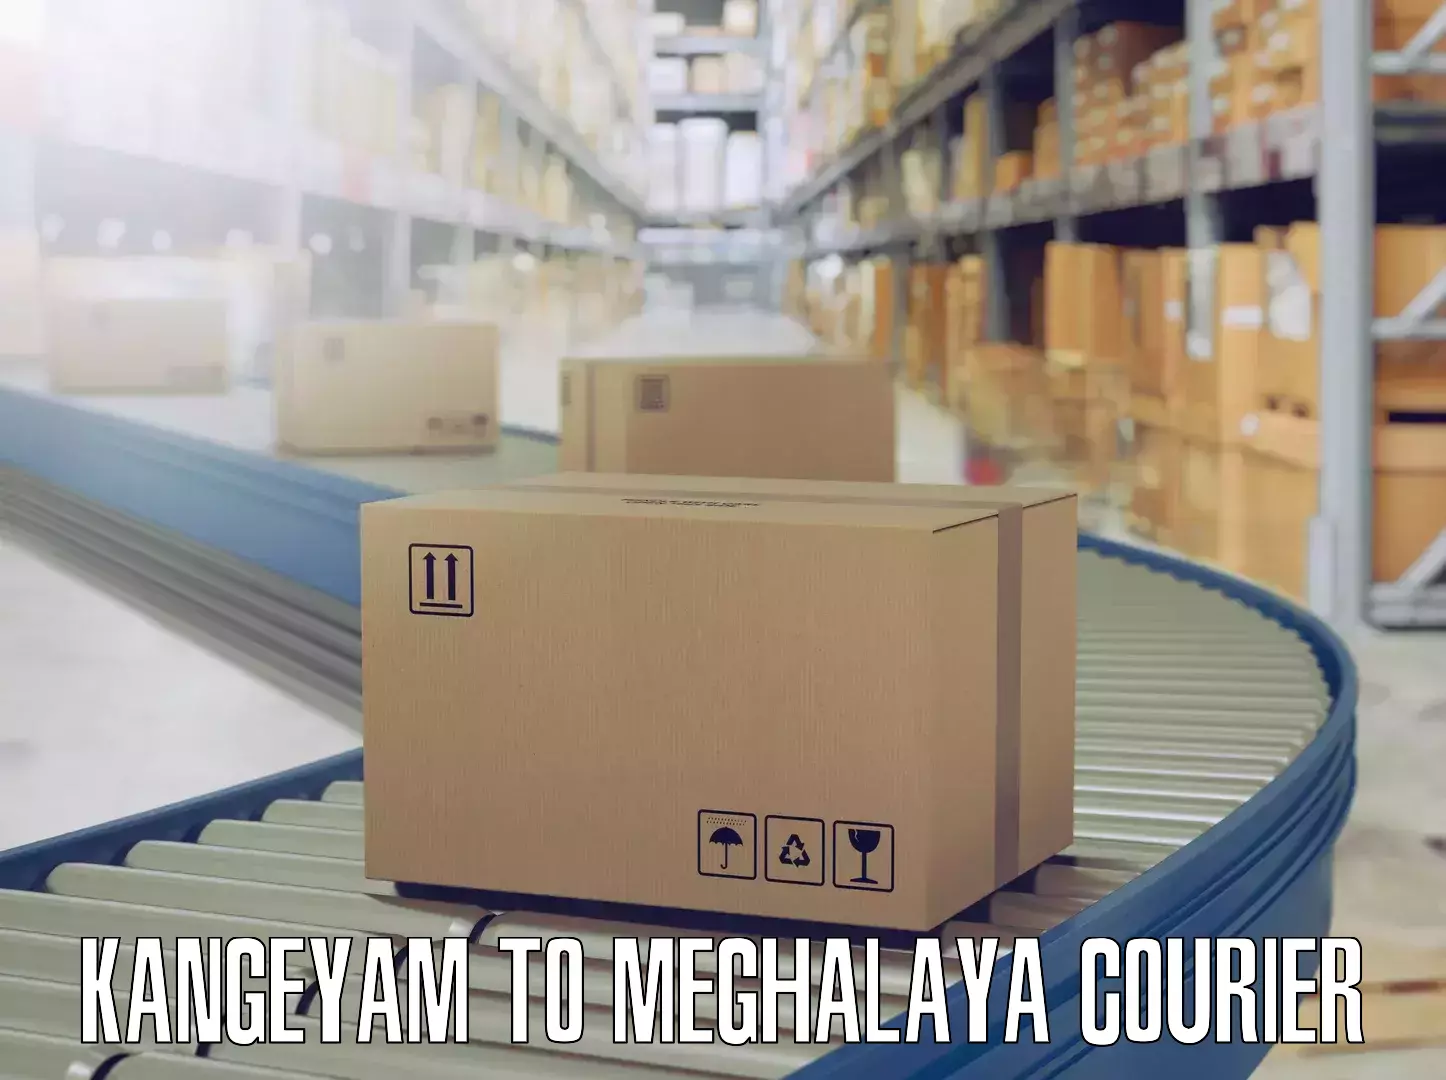 Professional furniture movers Kangeyam to Meghalaya